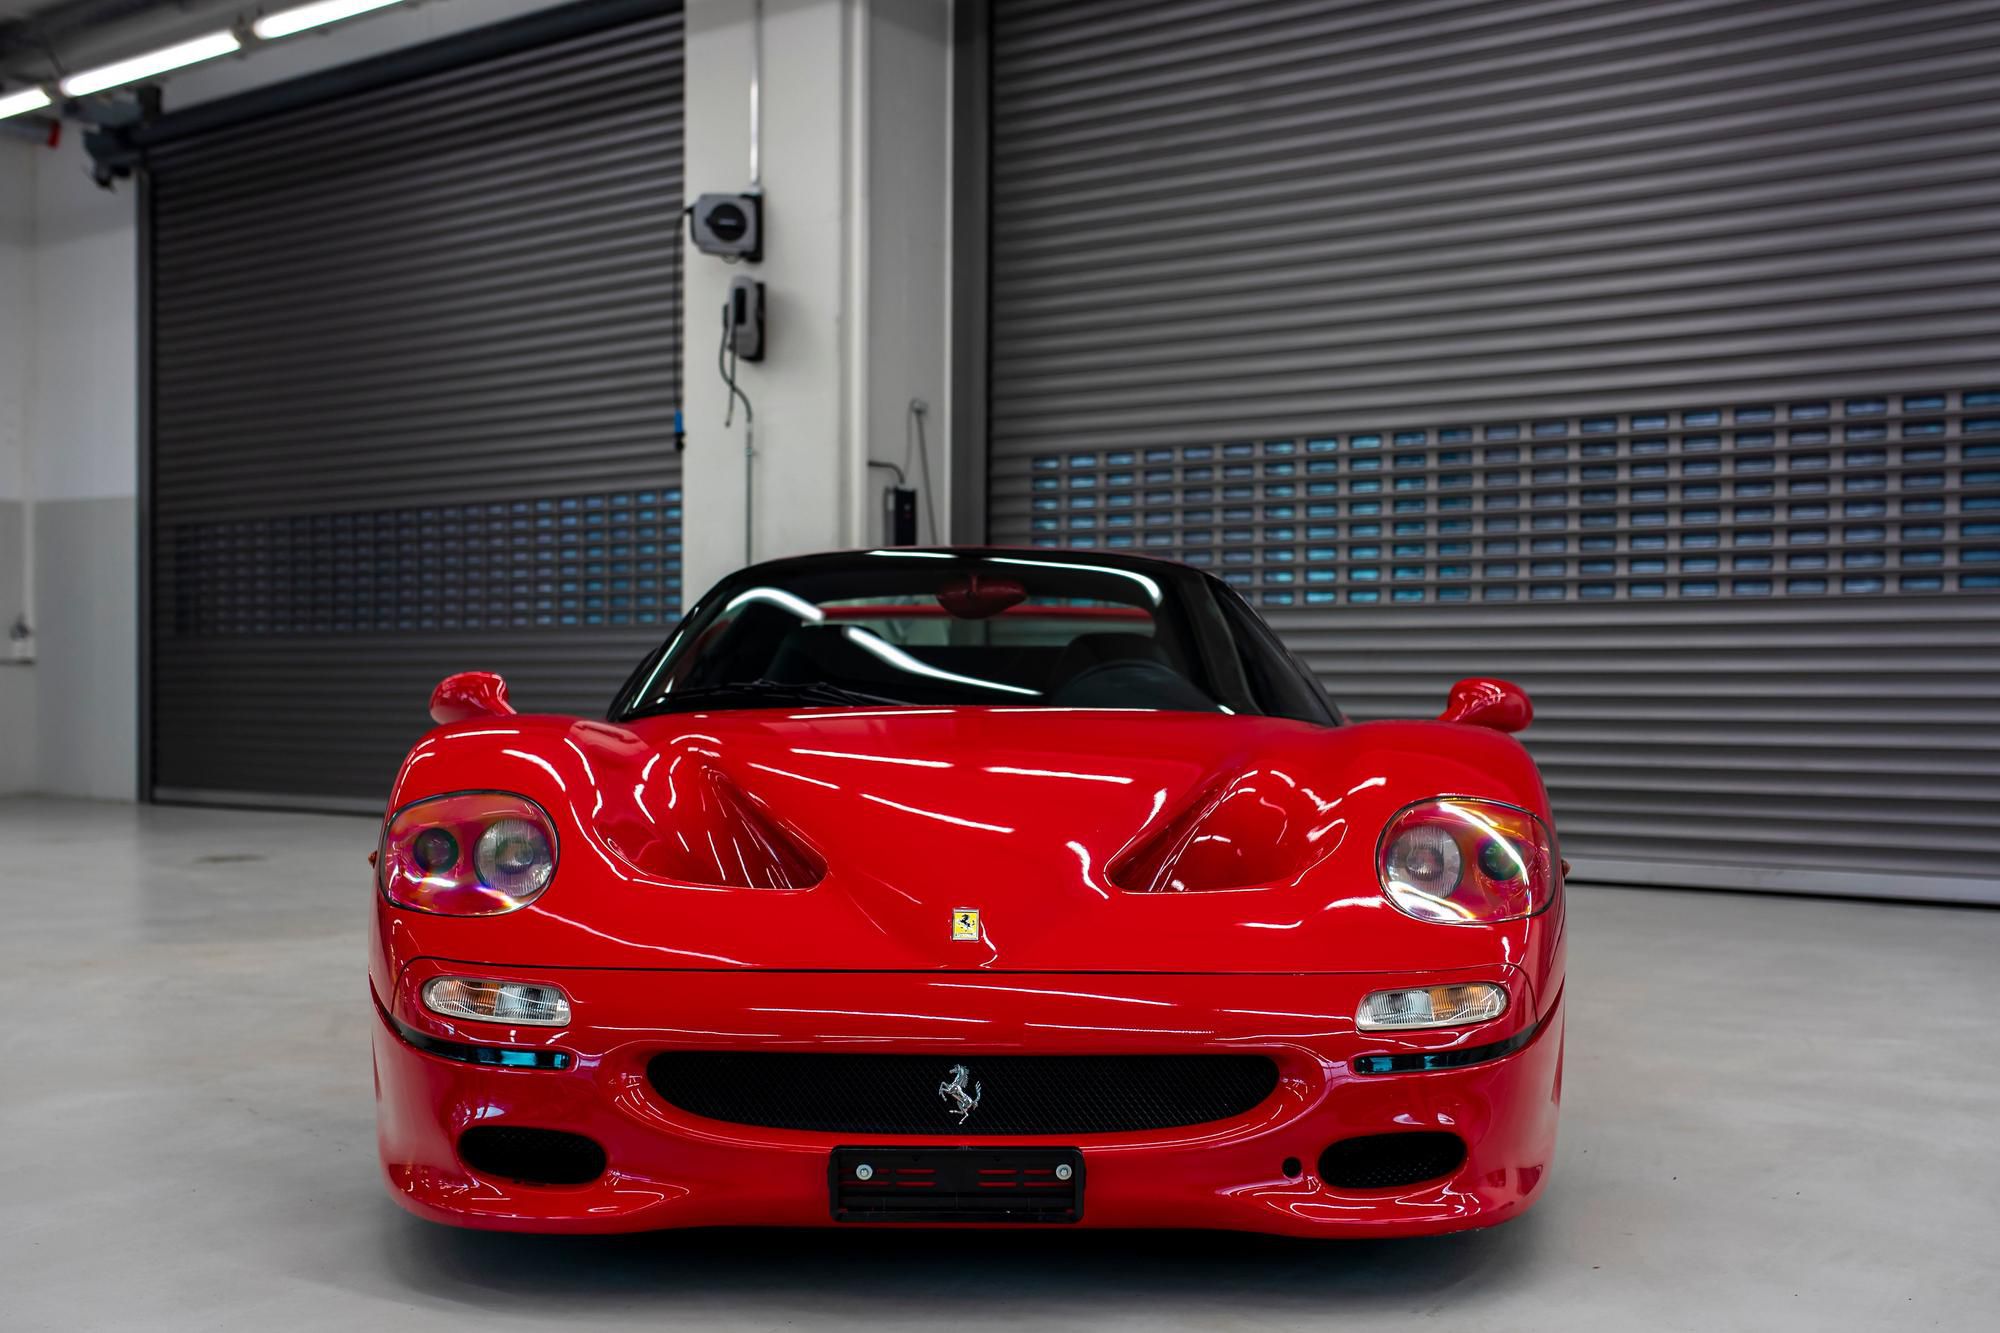 Ferrari F50 1996 - F50 je najstaršie auto, ktoré sa Sebastian Vettel rozhodol predať. Má 4,7-litrový motor V12, ktorý bol vyvinutý na základe formulového motora používaného v úvode 90. rokov. Auto bolo po výrobe dodané do Dánska a Sebastian Vettel si ho kúpil krátko po príchode do Ferrari, konkrétne v roku 2015. Je až neuveriteľné, že za 25 rokov toto auto neodjazdilo ani 7 000 kilometrov.